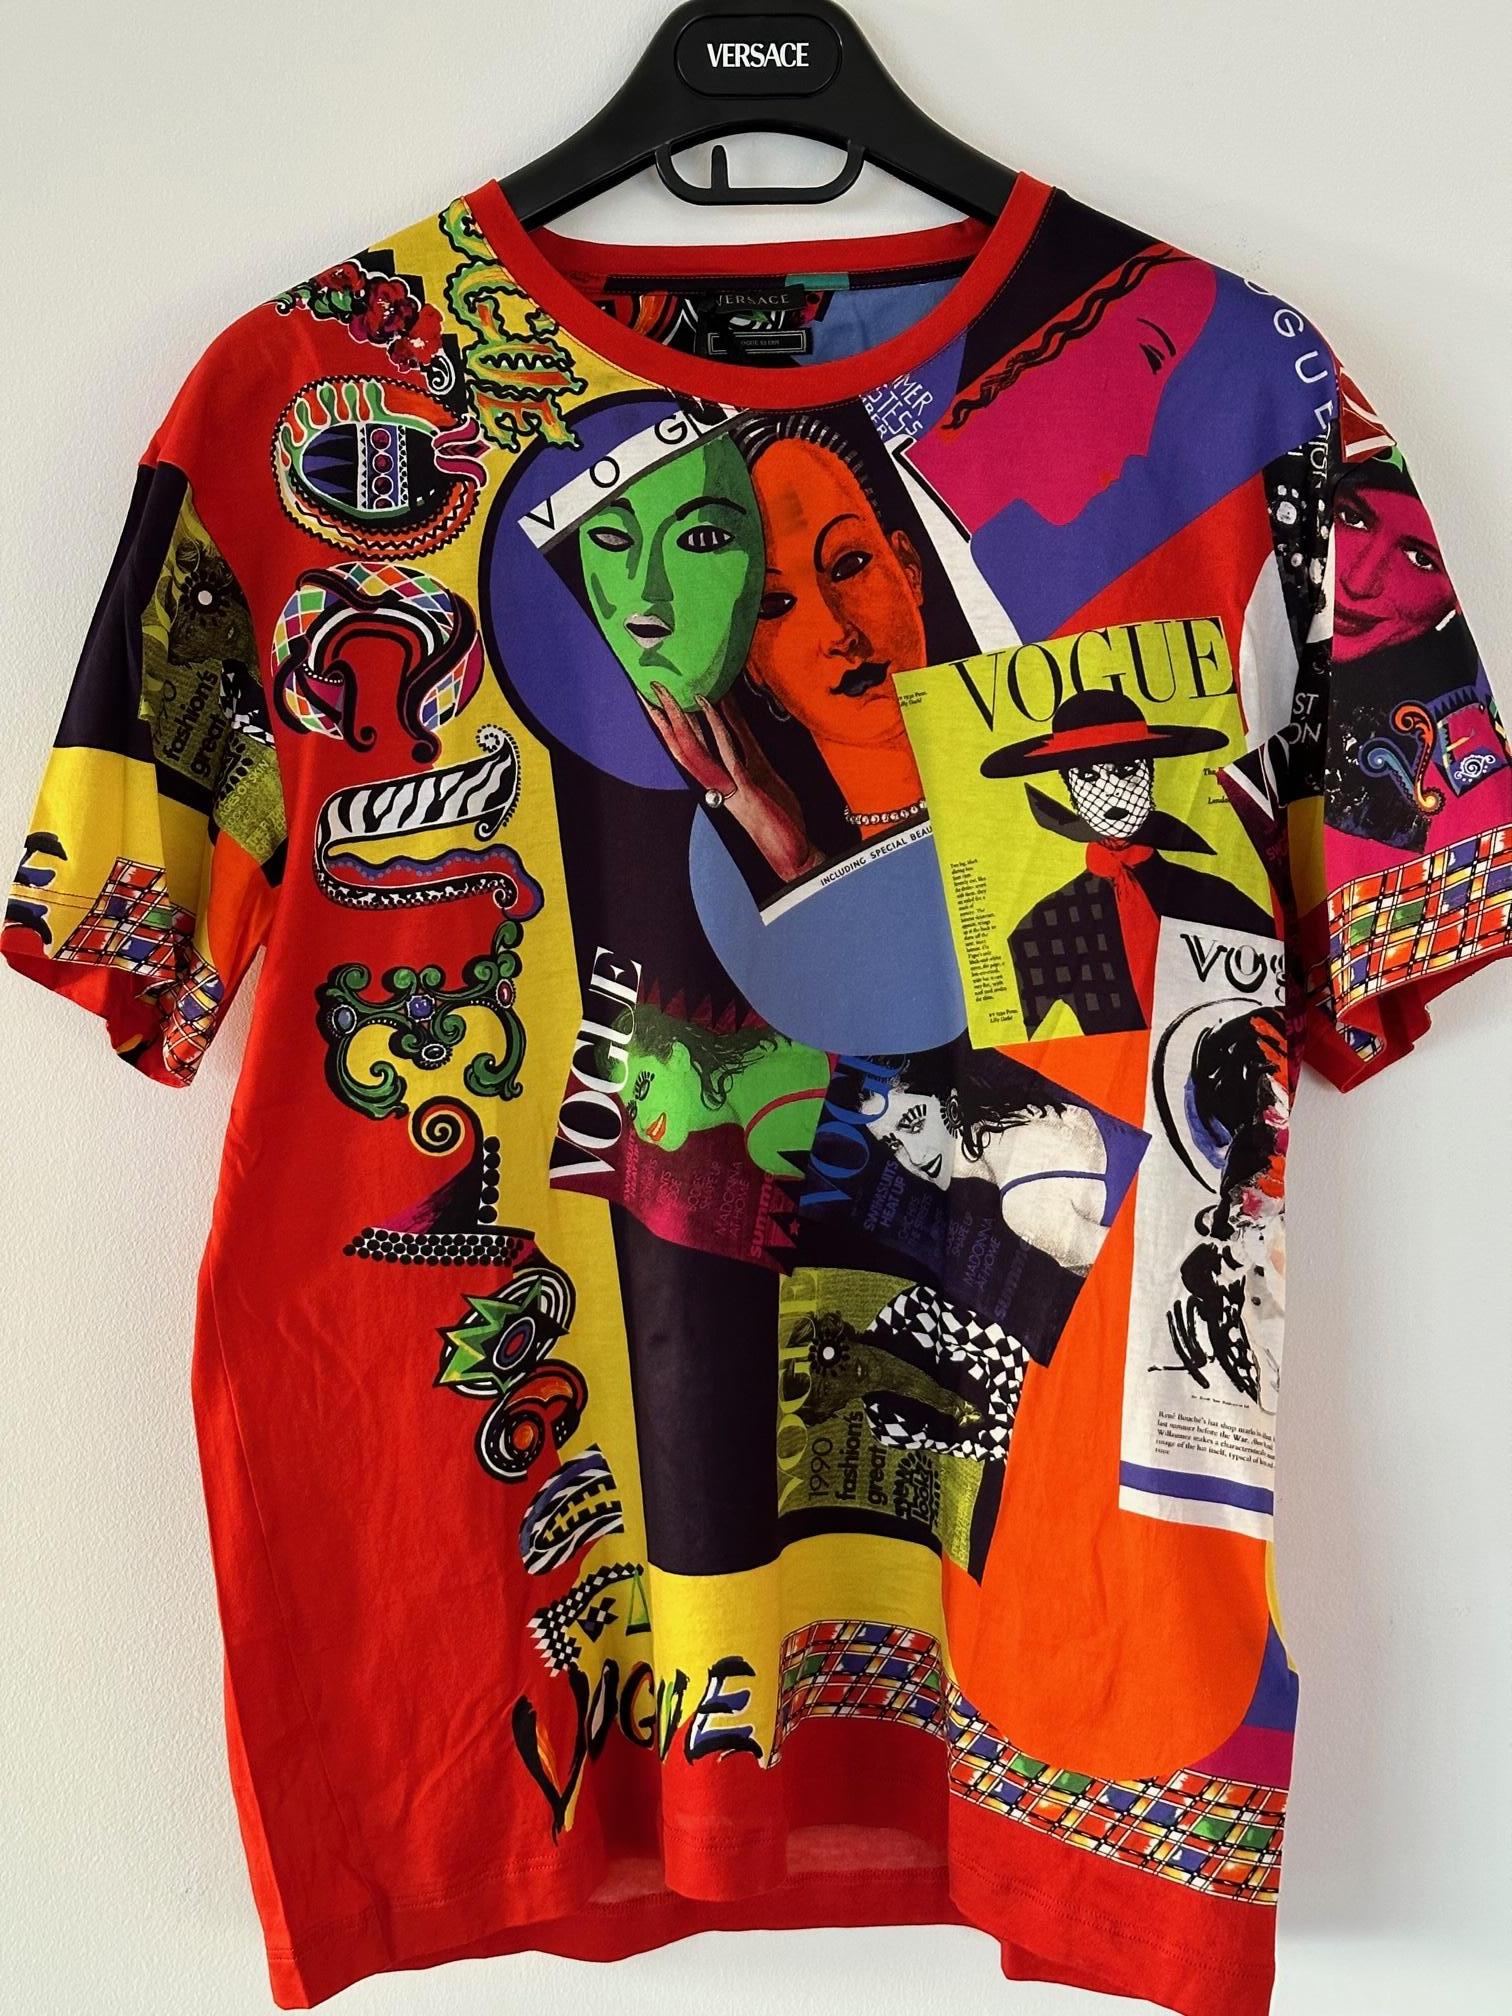 VERSACE Spring Summer 2018 Limited
Edition T-Shirts hommage
L'imprimé Vogue de GIANNI
La collection printemps-été 1991 de VERSACE...
À la suite du défilé du printemps 2018 de Versace, qui rendait hommage à la créativité de Gianni Versace à